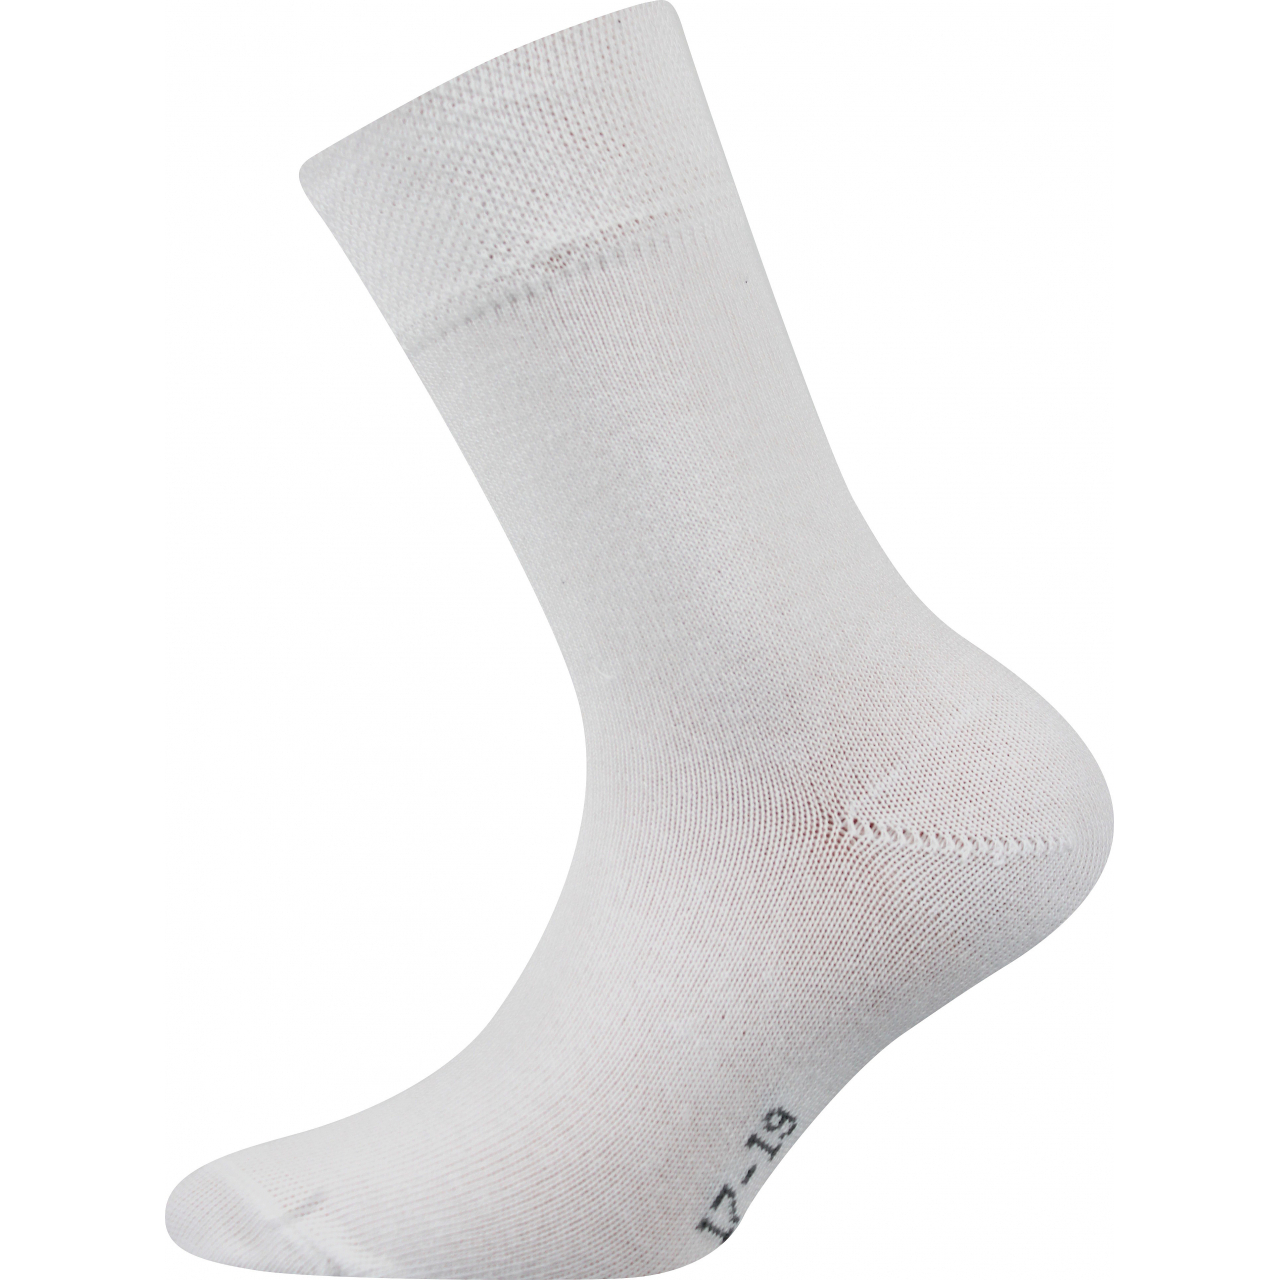 Ponožky dětské Boma Emko - bílé, 20-24